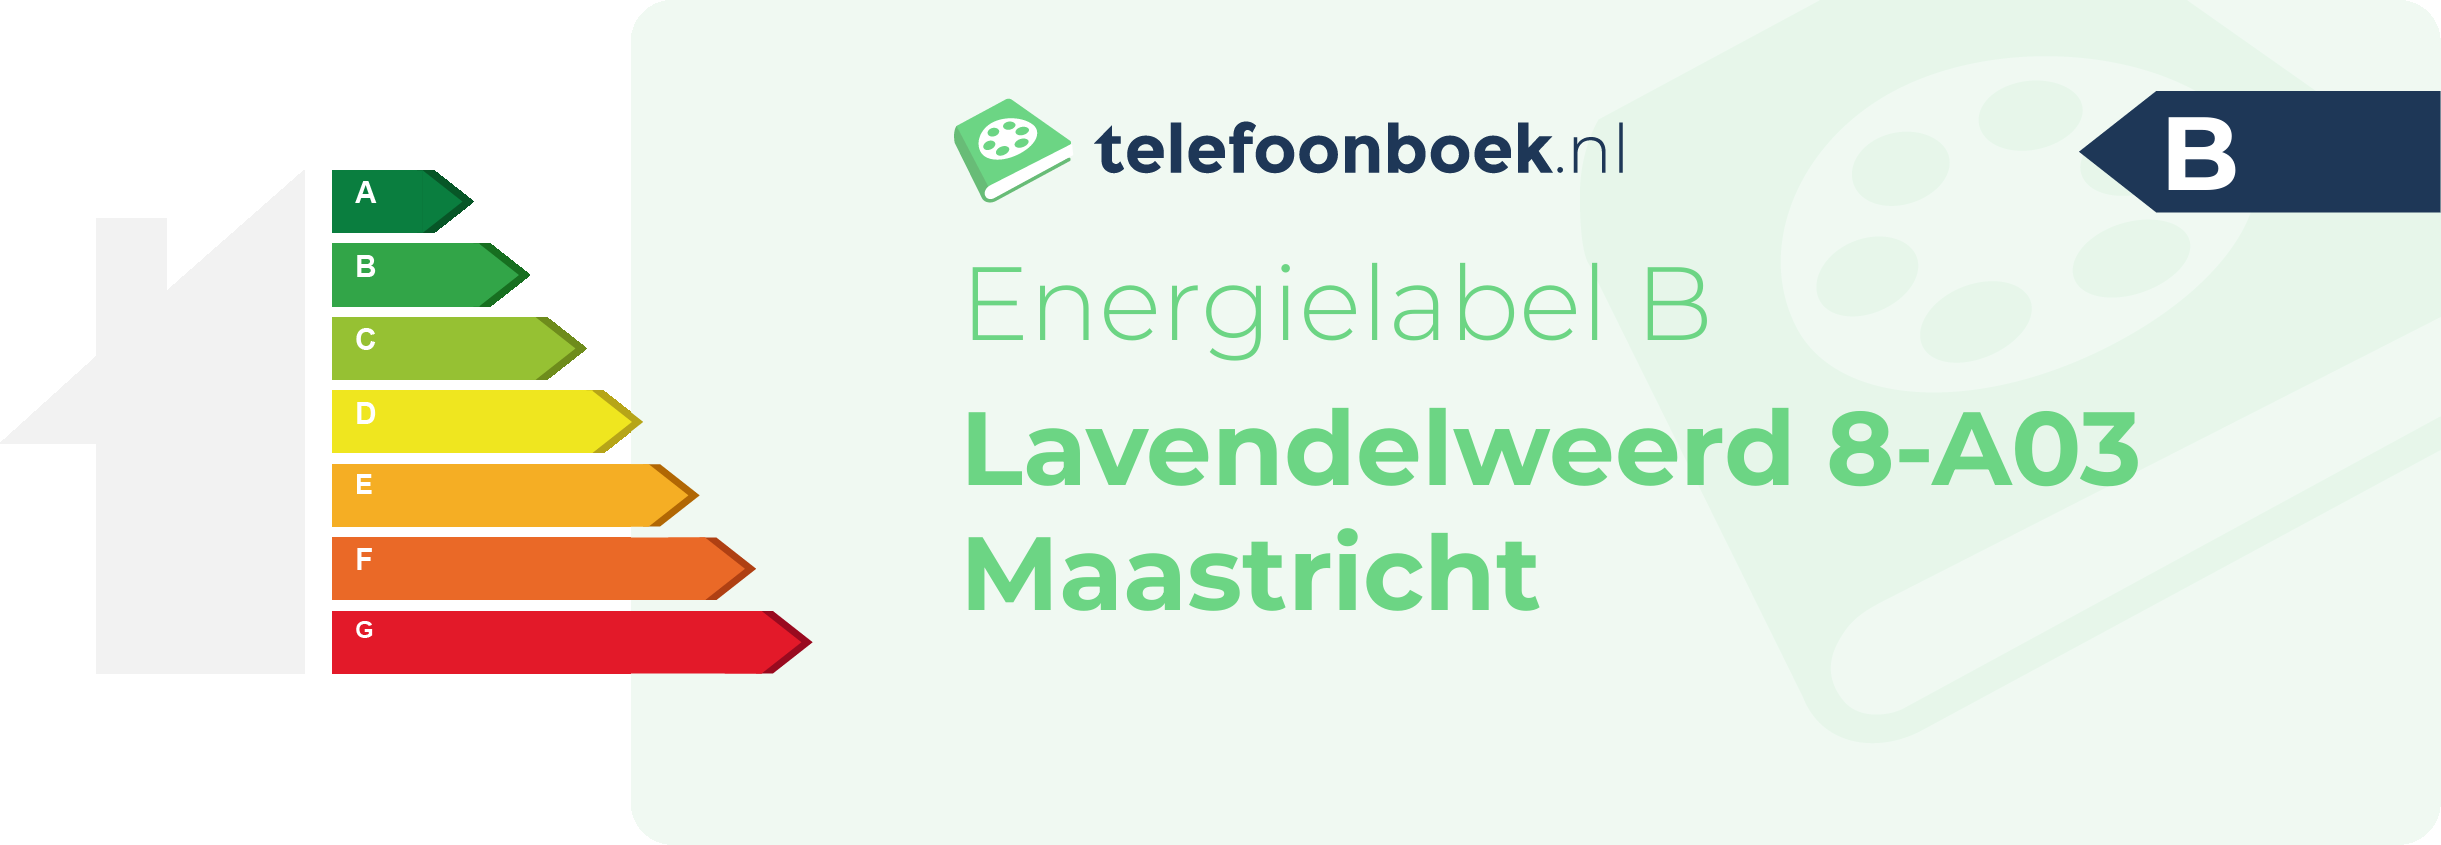 Energielabel Lavendelweerd 8-A03 Maastricht